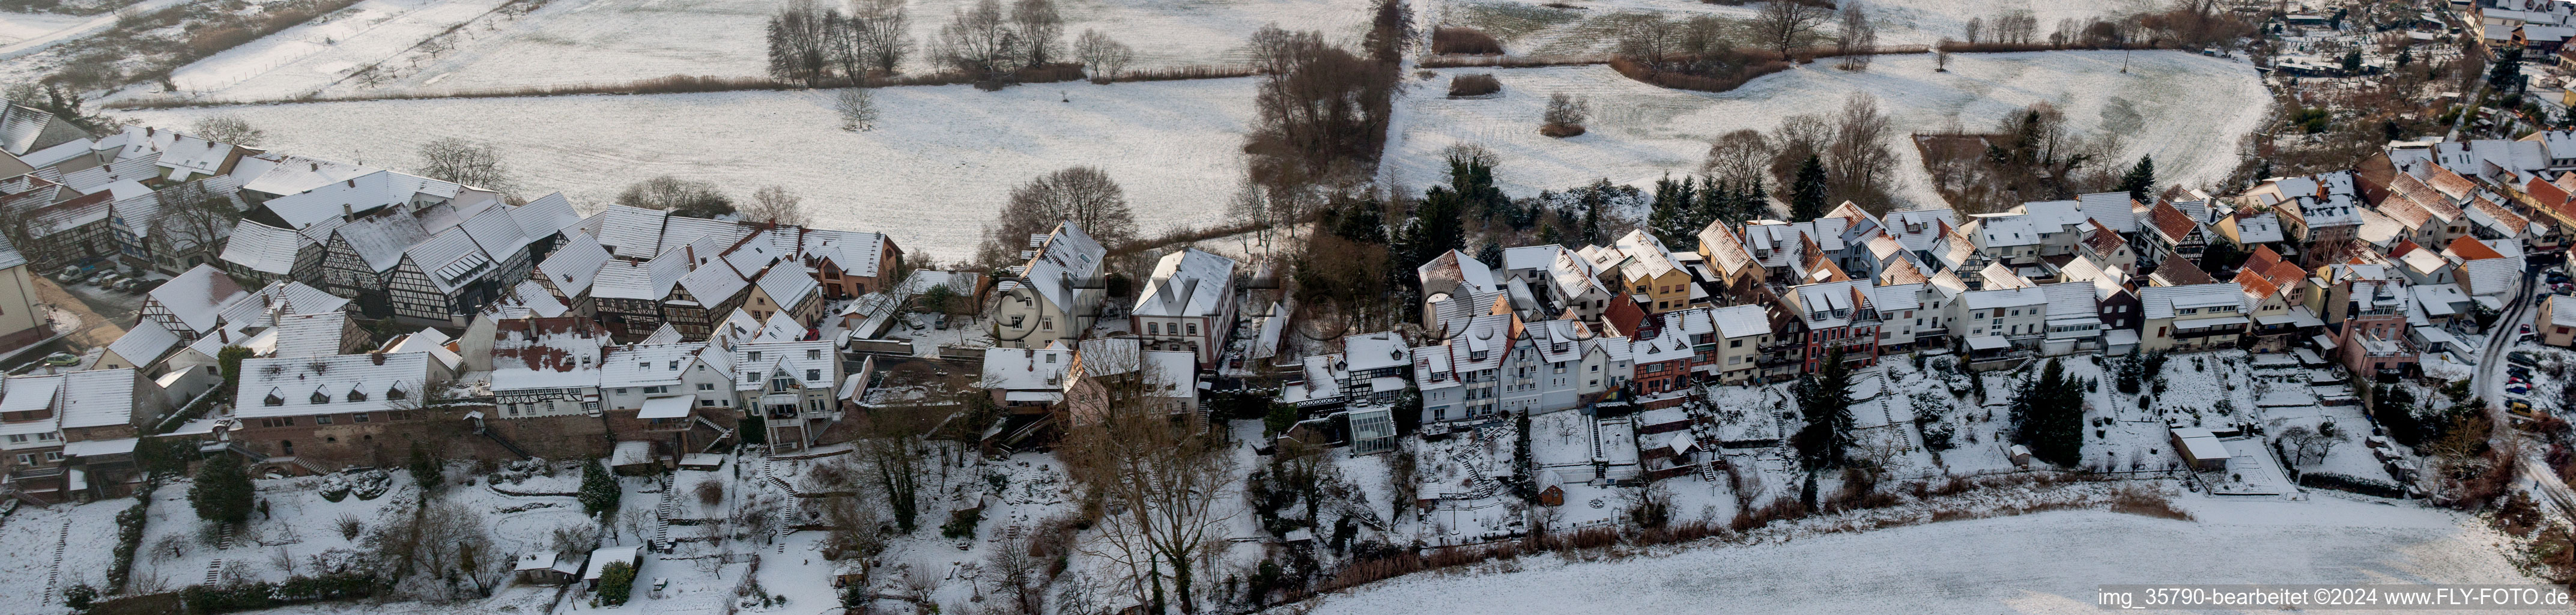 Luftbild von Winterlich schneebedeckte Panorama Perspektive Dorf - Ansicht der Ludwigstrasse in Jockgrim im Bundesland Rheinland-Pfalz, Deutschland